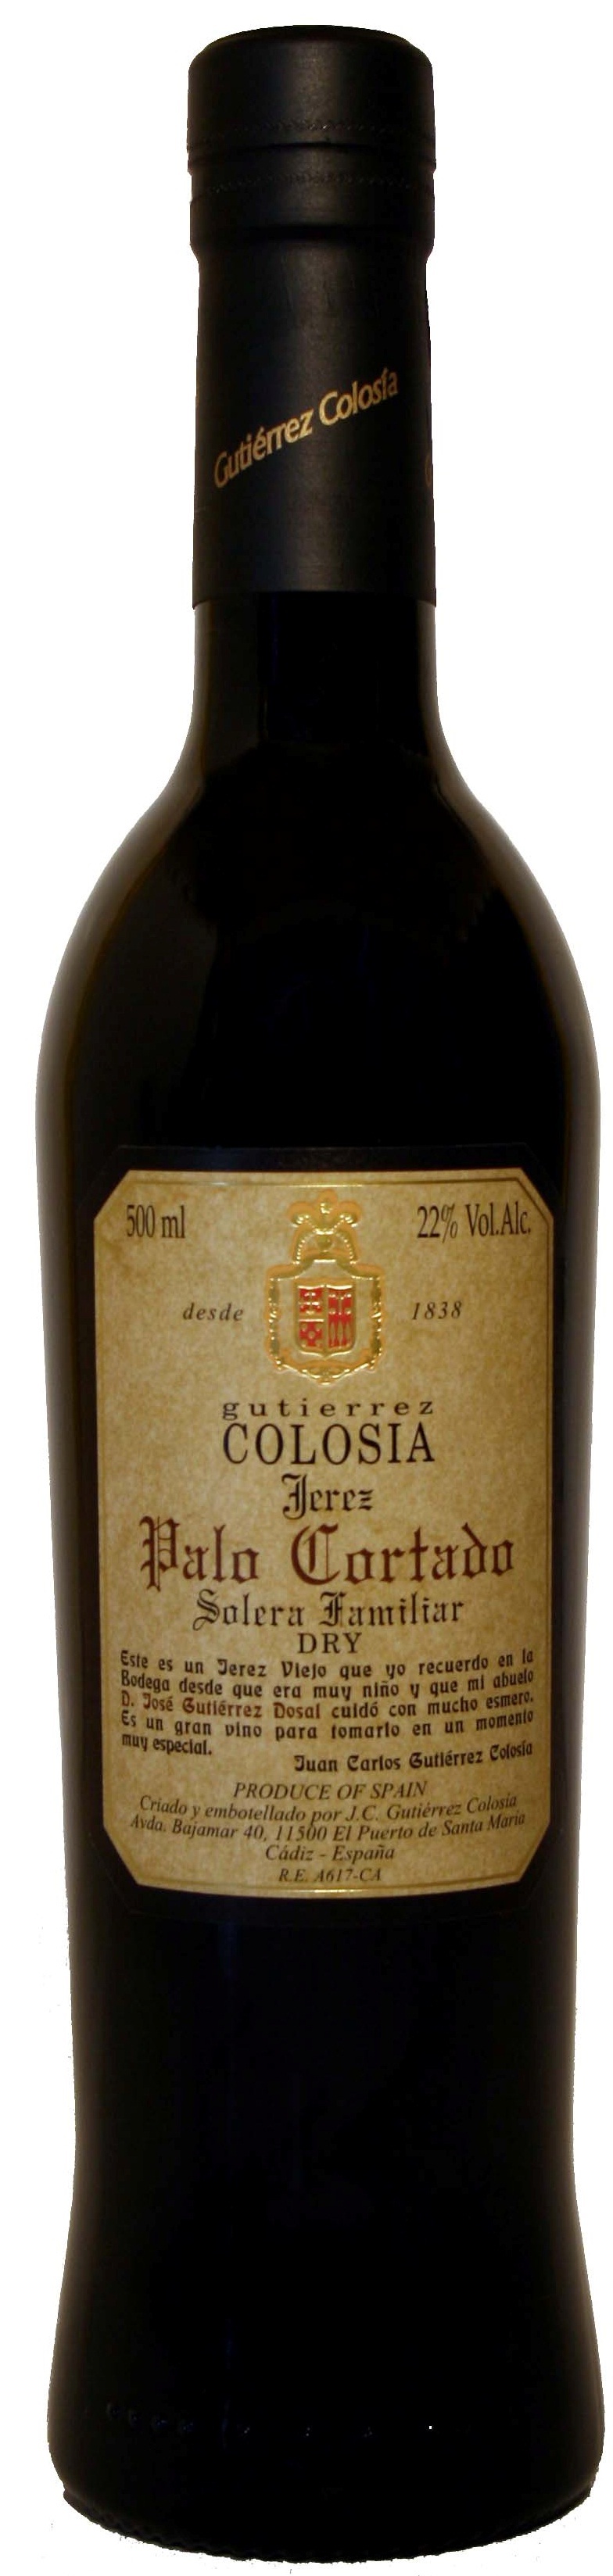 Logo del vino Colosía Solera Familiar Palo Cortado